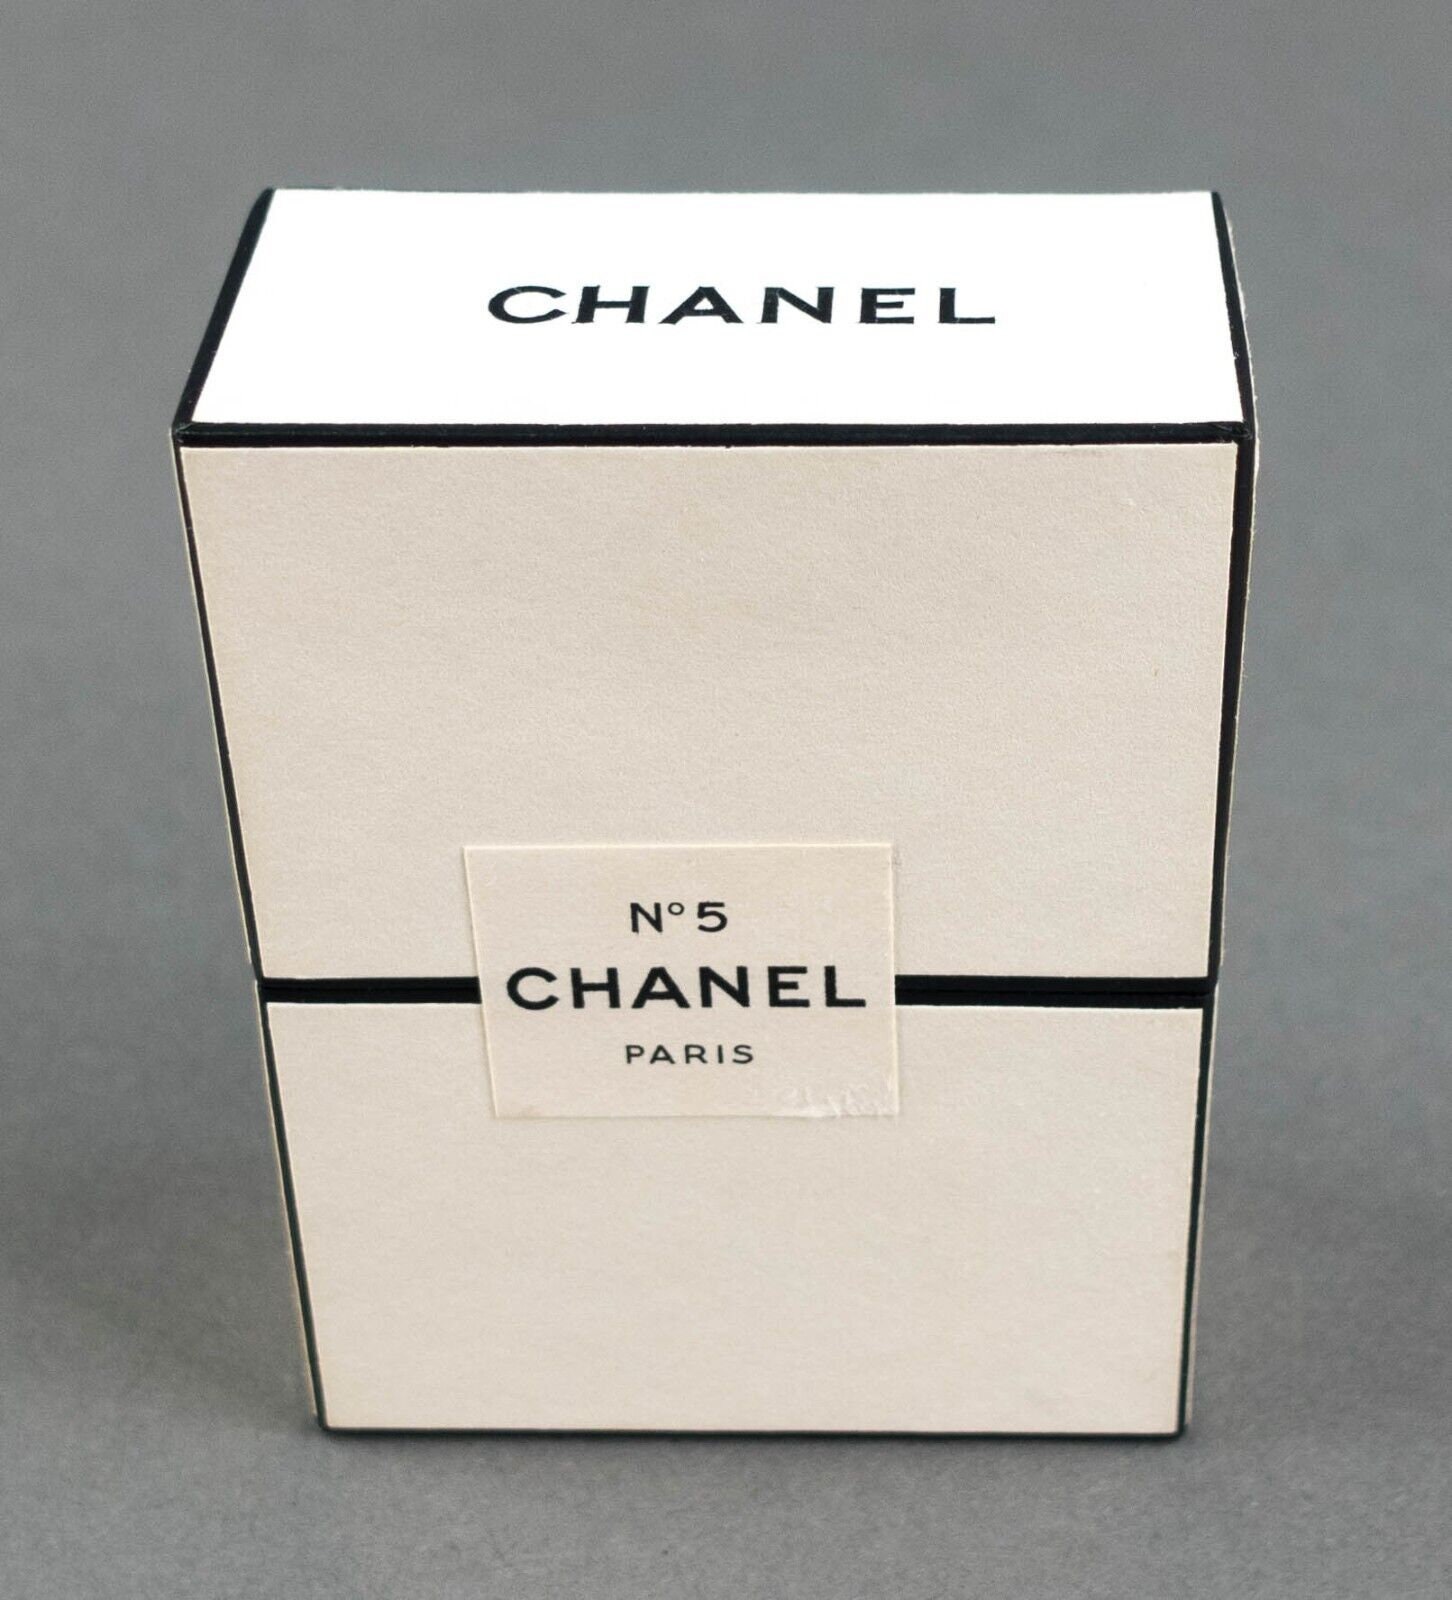 Chanel France No 5 Parfum Perfume Extrait 1 Oz / 28 Ml PM 201 -  Israel